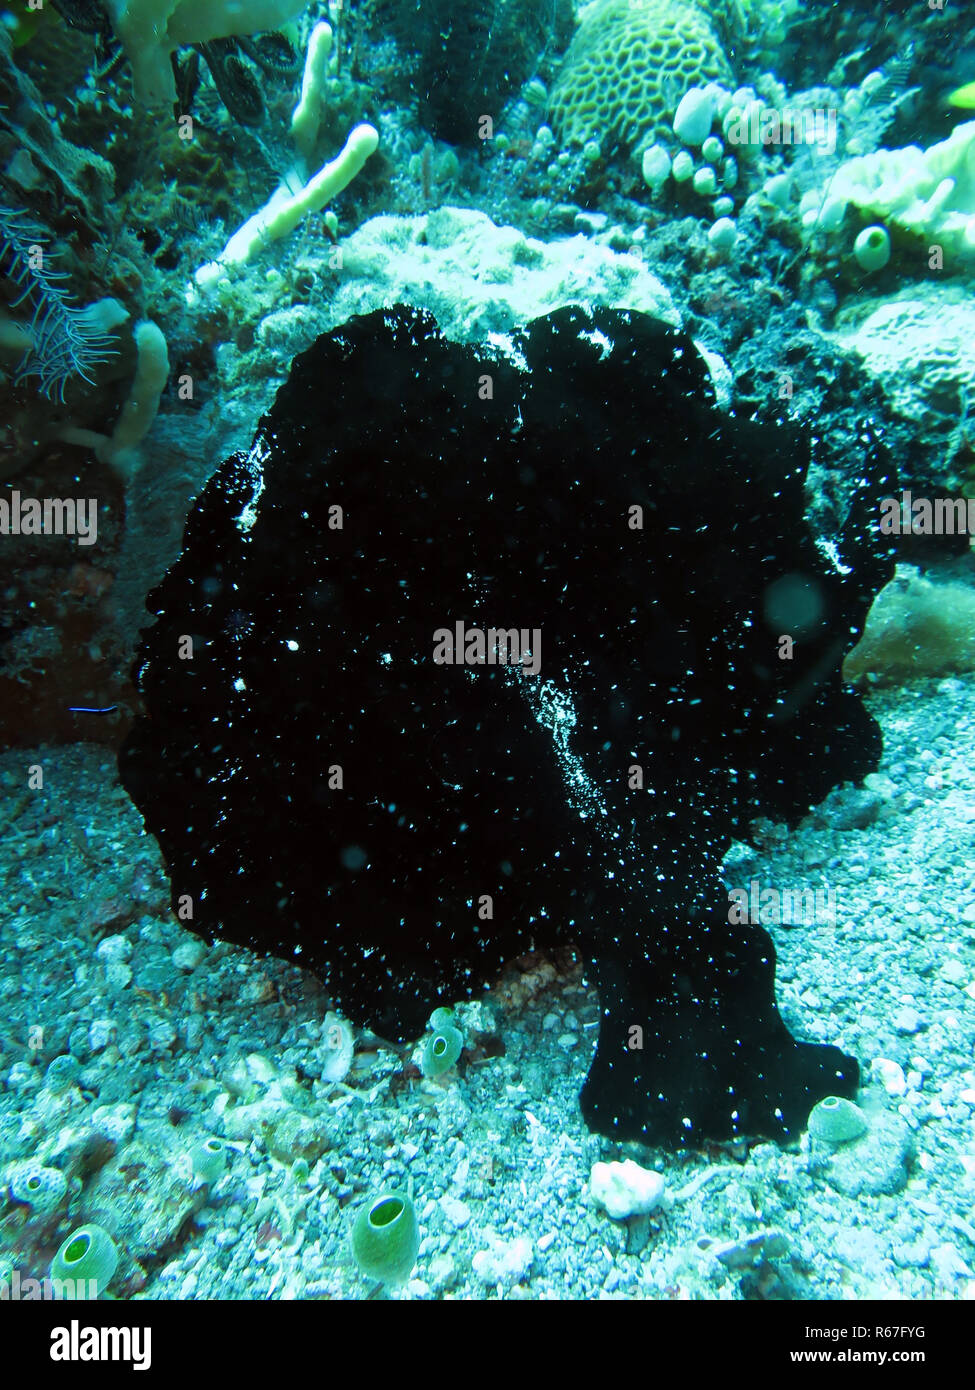 Poisson grenouille de commerson noir (antennarius commersoni),Un poisson grenouille géant Banque D'Images